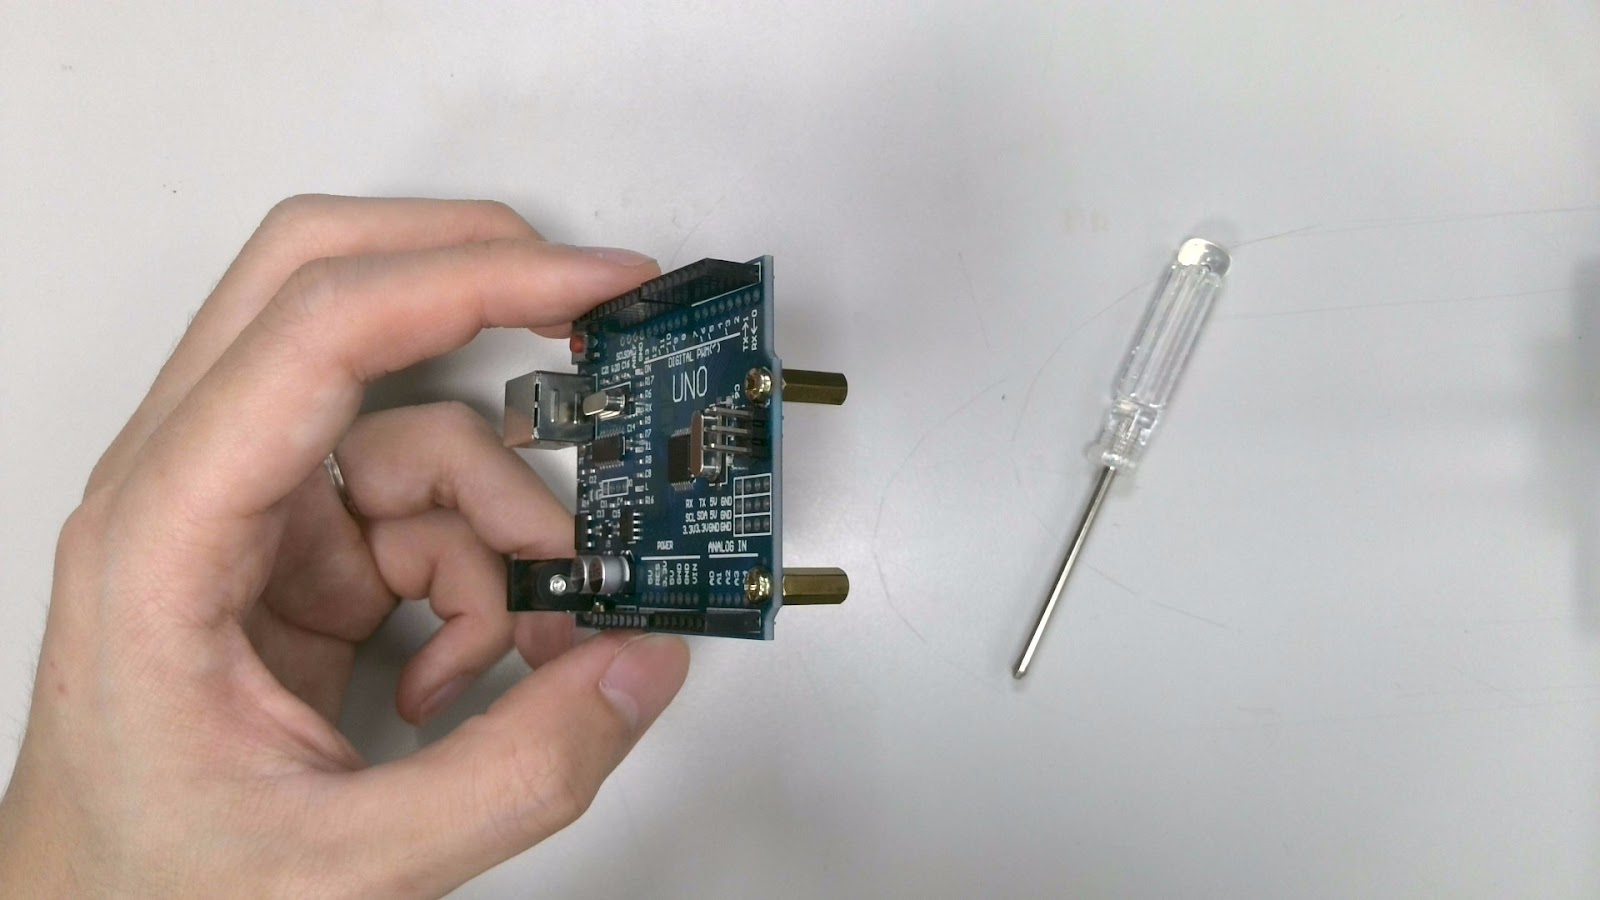 Arduino 專題教學－MP3 音樂播放器